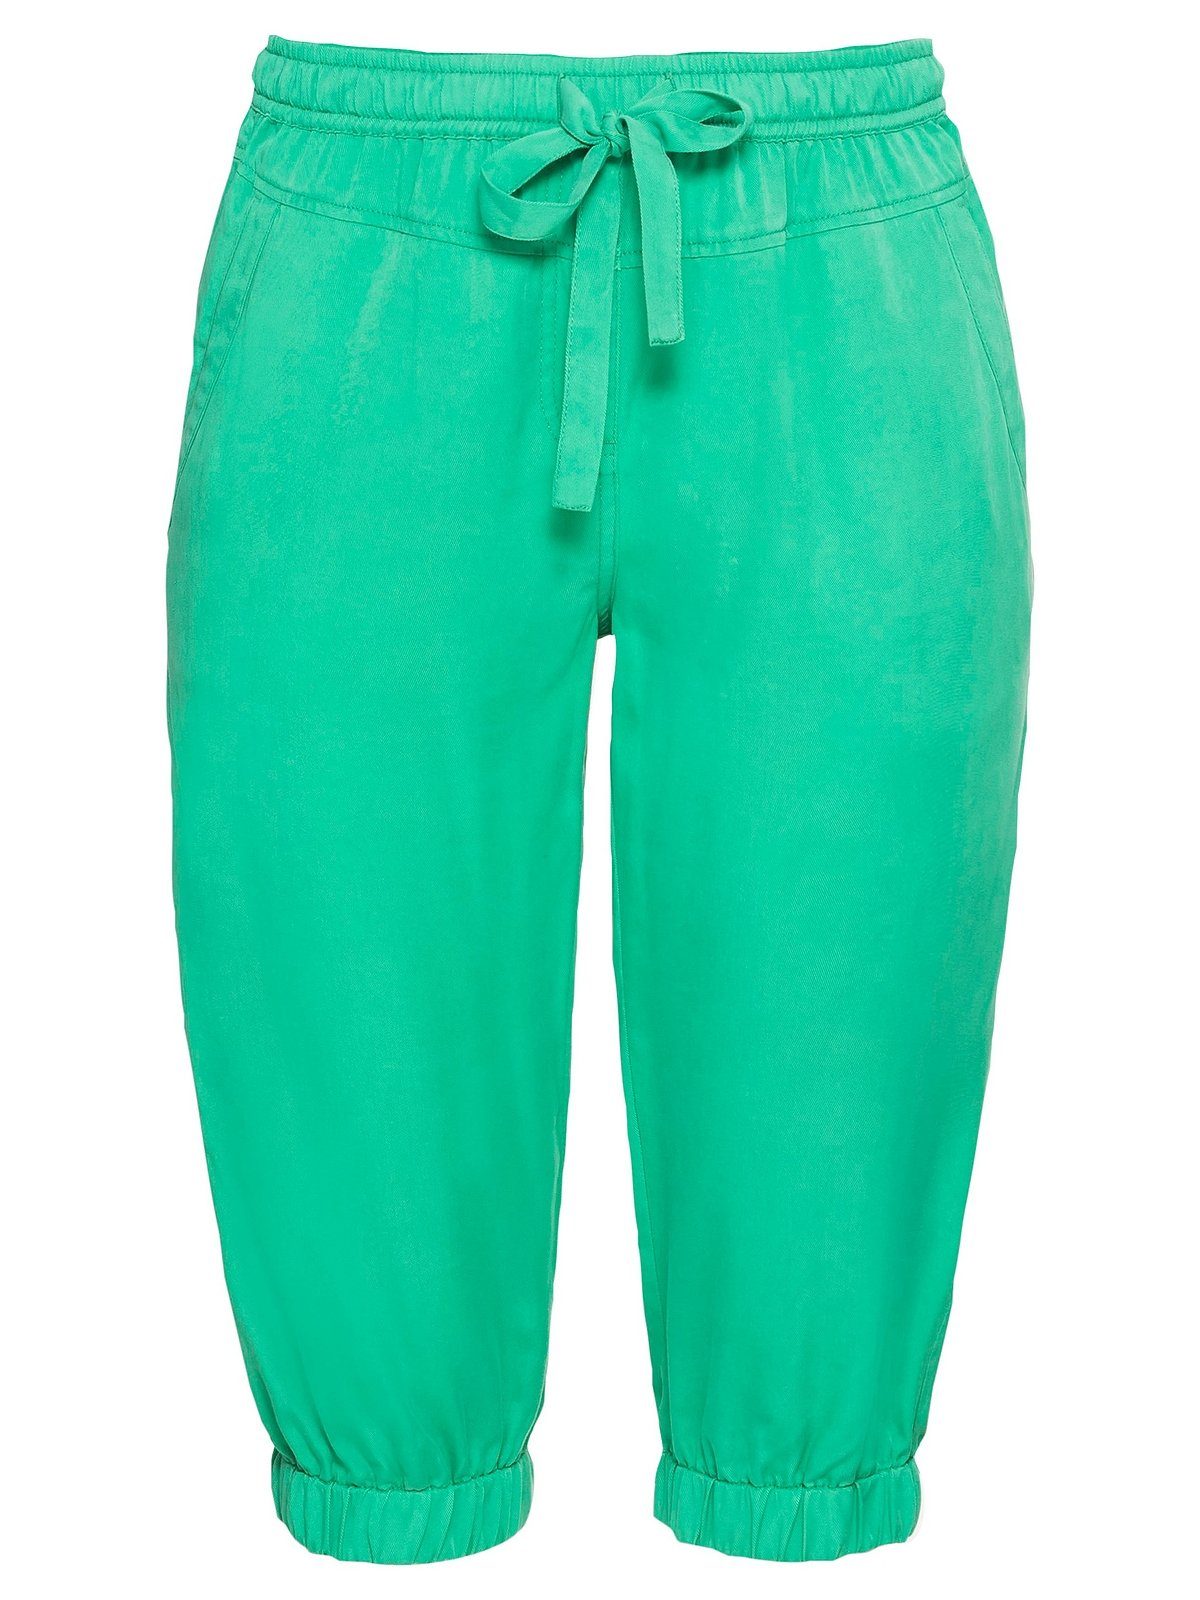 Damen Hosen Sheego Caprihose Joggpants aus pflegeleichter Lyocell-Qualität